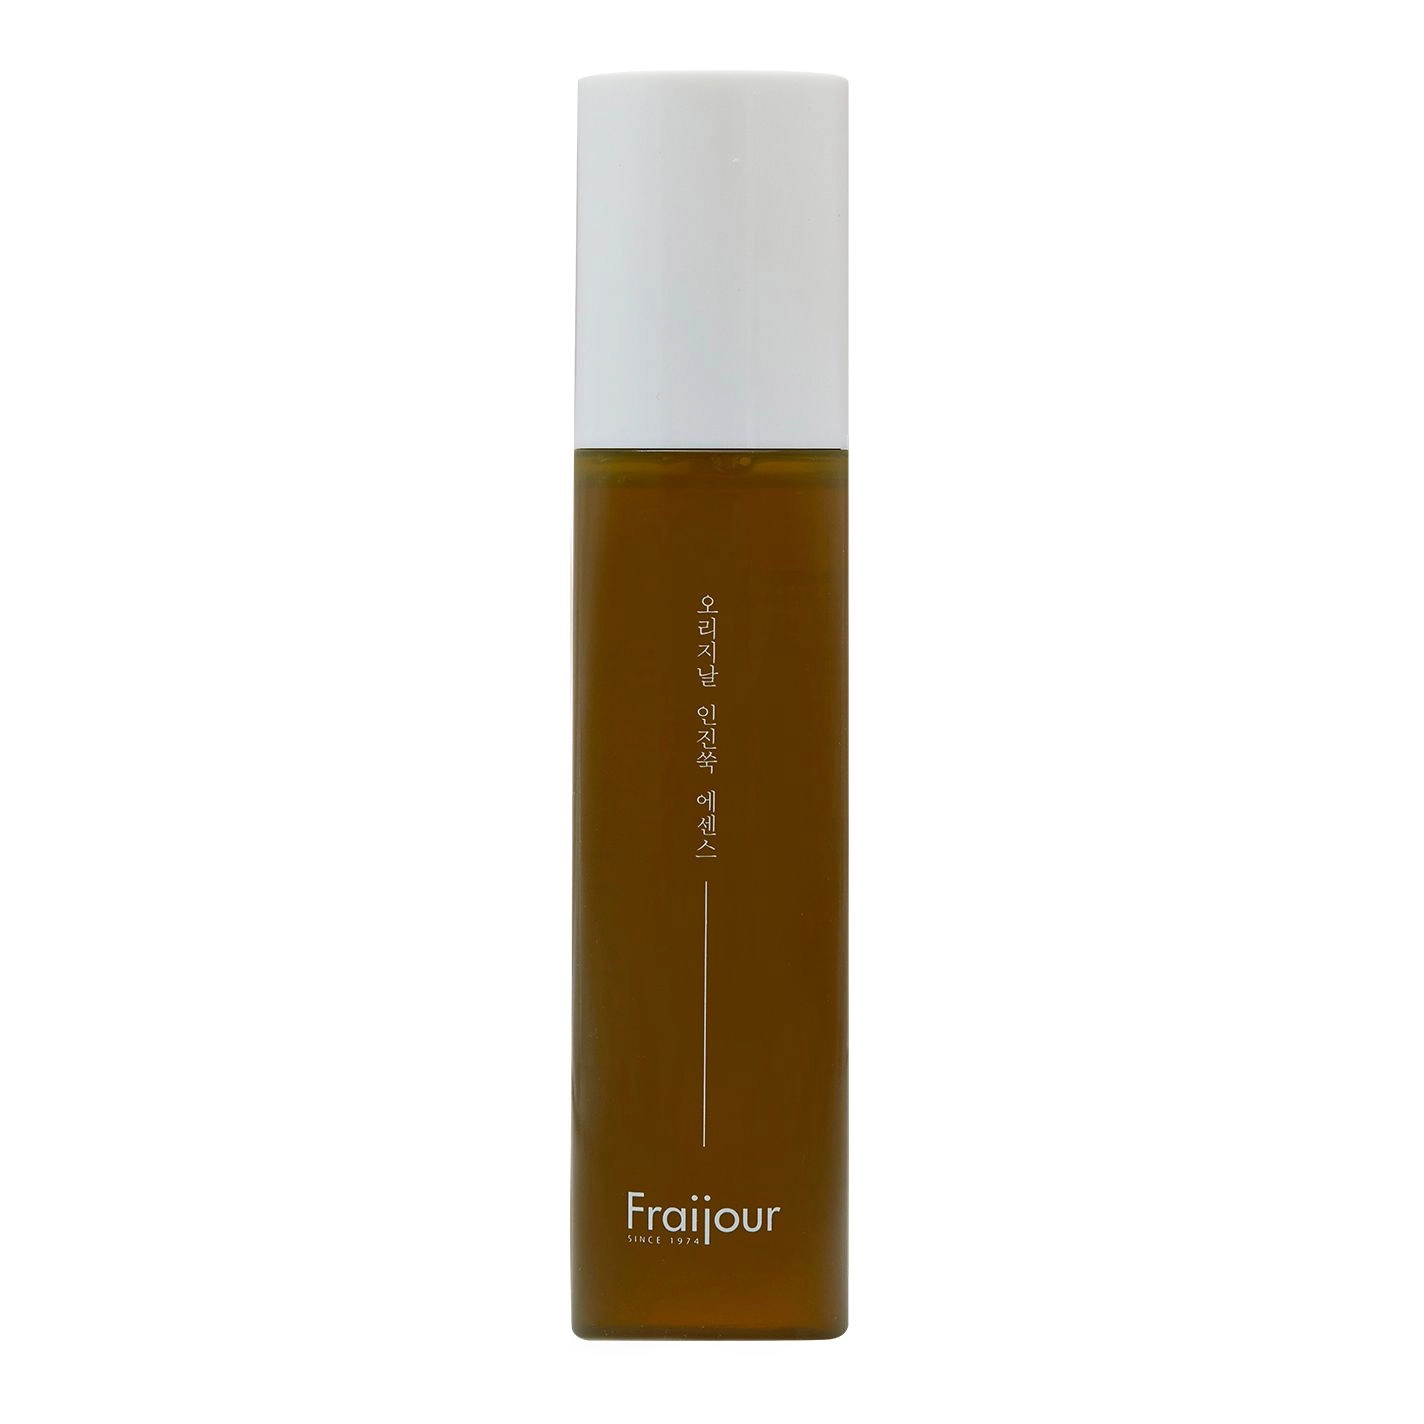 Пенка для умывания для чувствительной кожи с экстрактом полыни - Fraijour Original Artemisia Bubble Facial Foam, 200 мл - фото N1